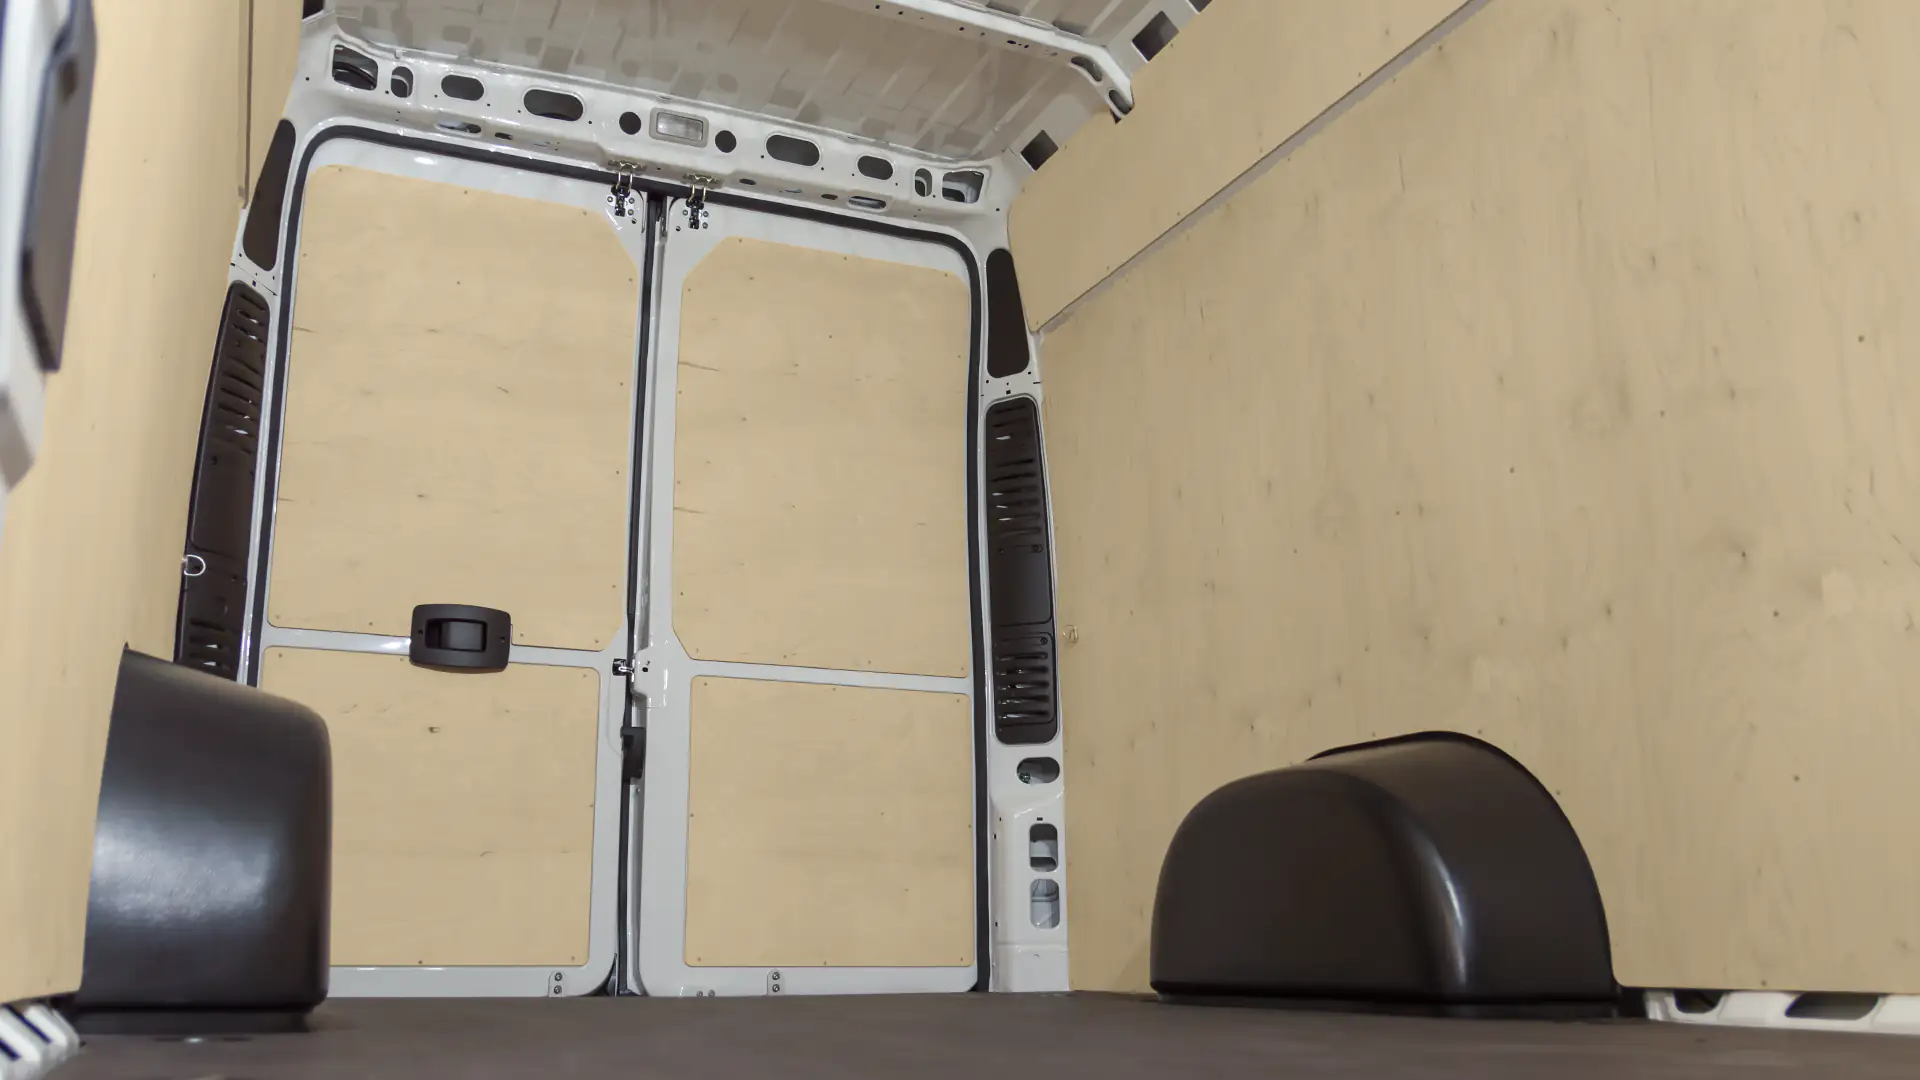 Zdjęcie zabudoway przestrzeni ładunkowej w samochodzie Iveco Daily.